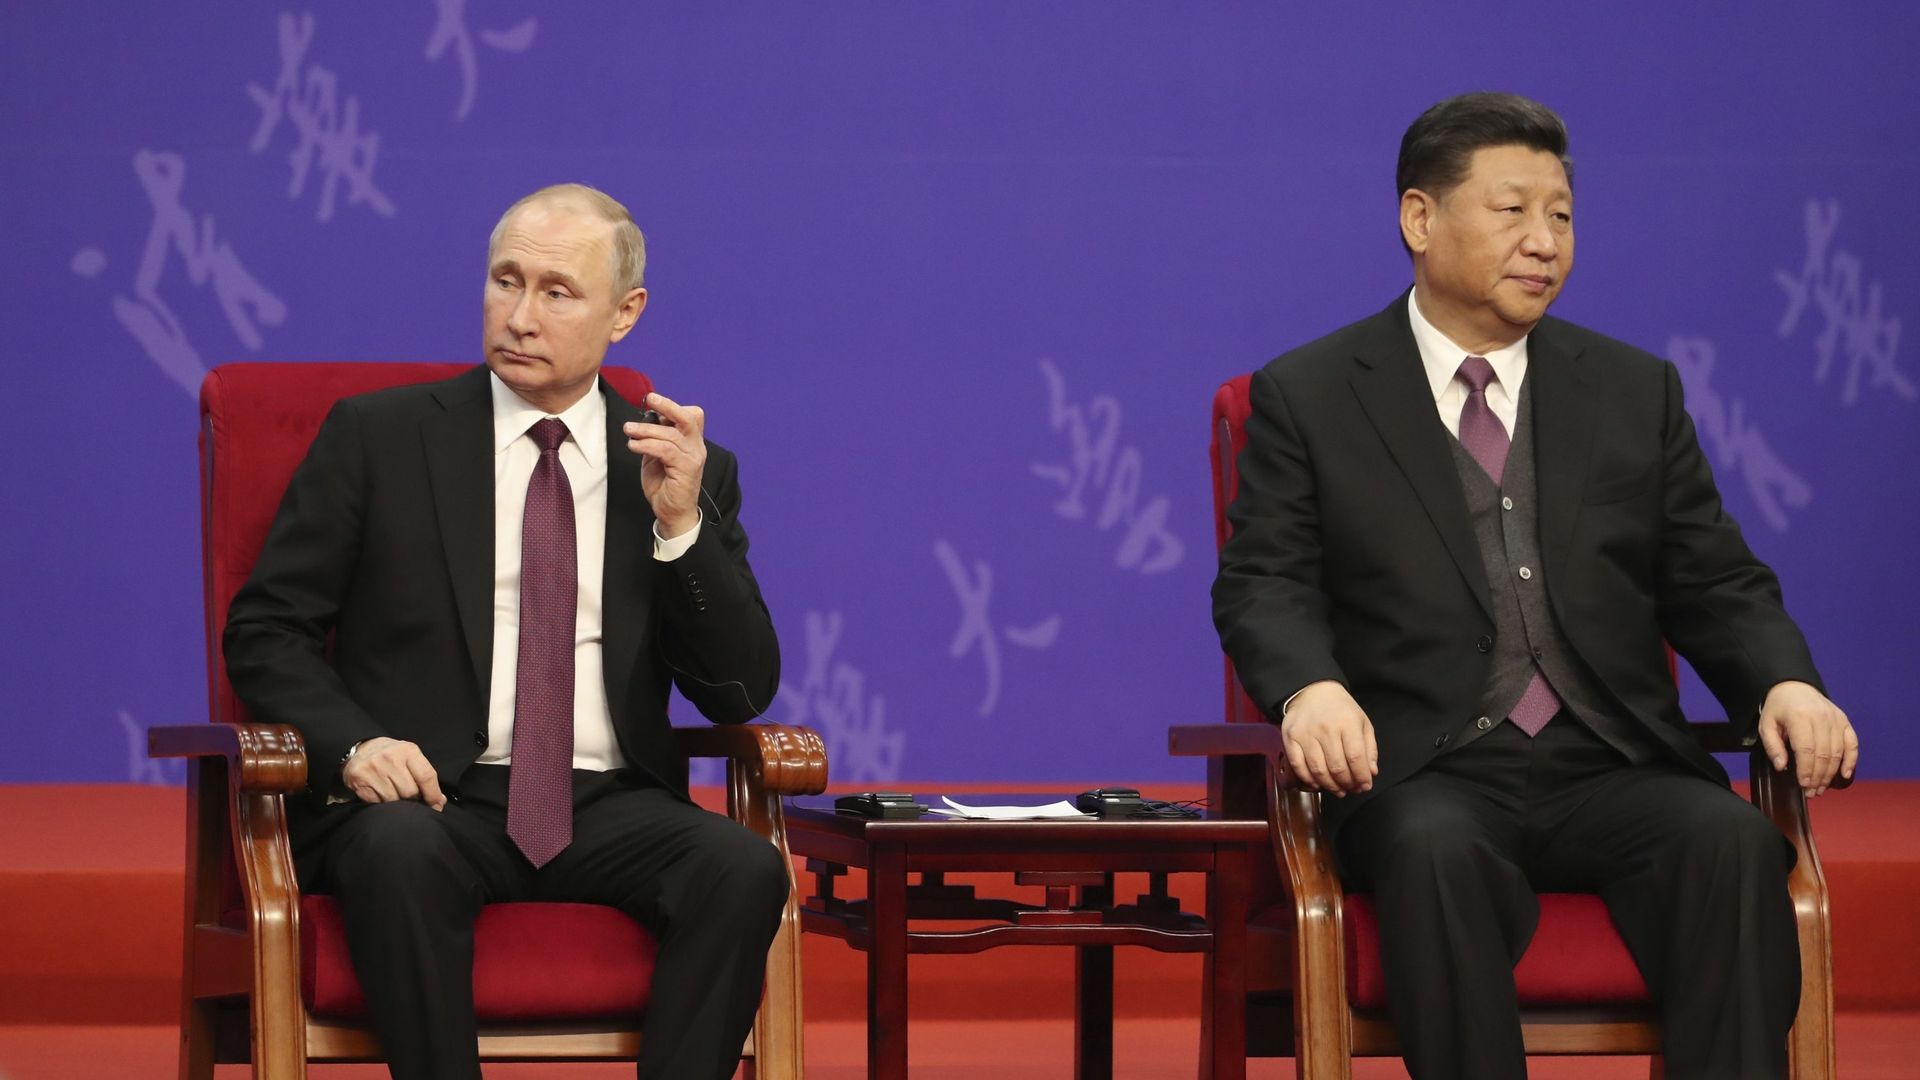 Guerra in Ucraina: perché la Cina non aiuta la Russia?  Gioco di problemi Xi Jinping